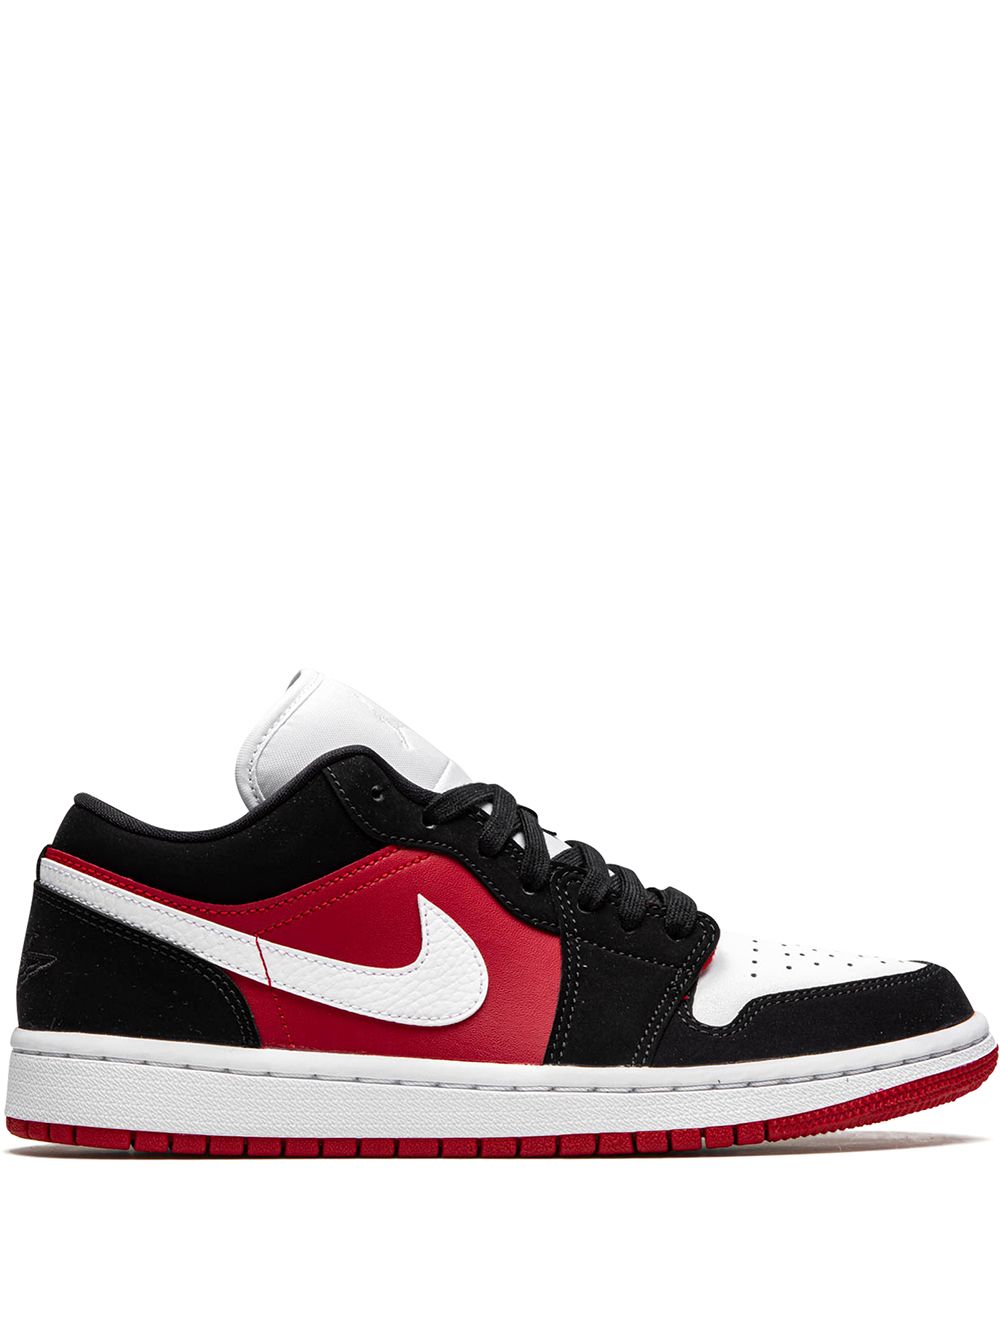 Jordan Air Jordan 1 Low "Black/White/Gym Red" sneakers